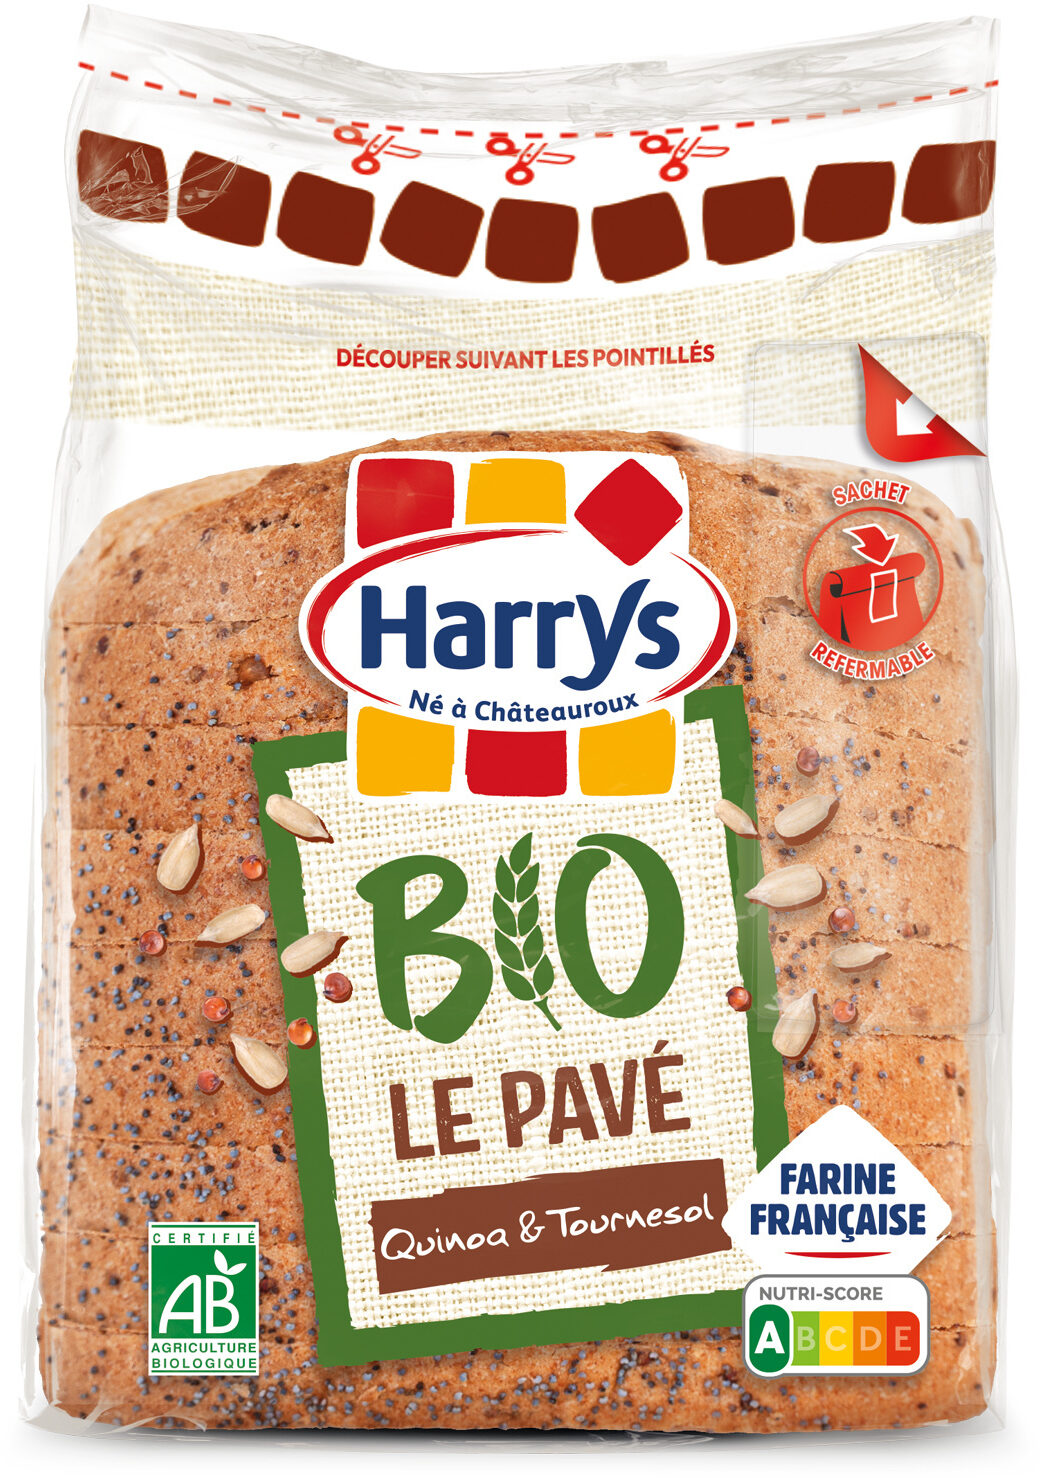 Harrys pain de mie pave bio aux graines de quinoa et tournesol 250g - Product - fr